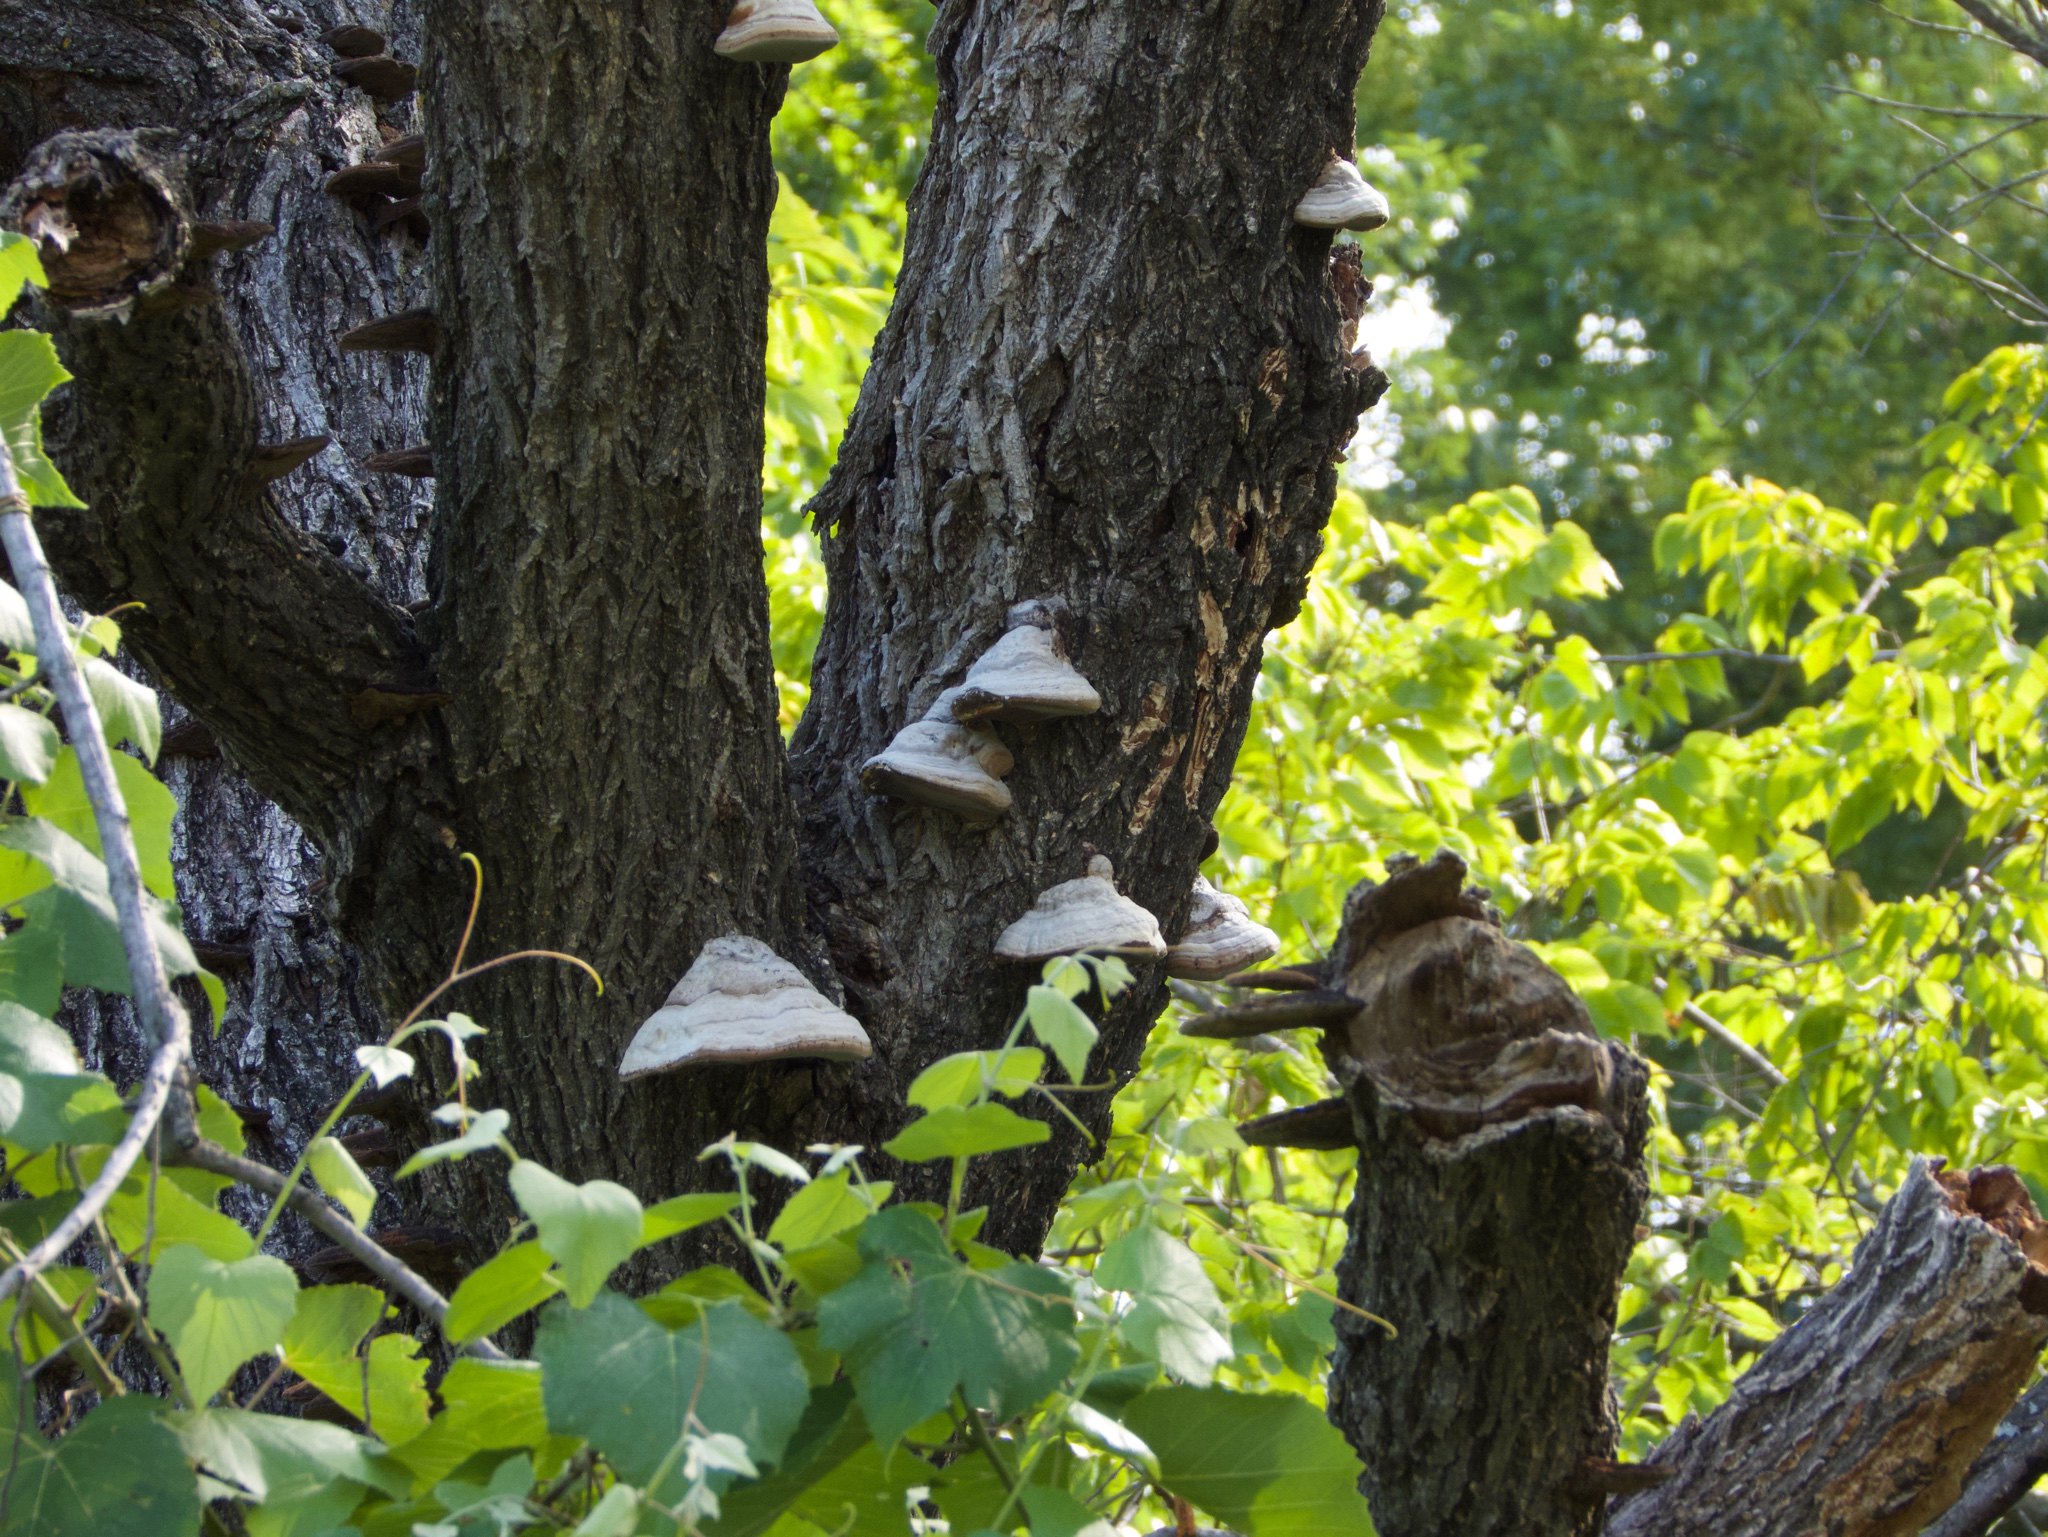 Woodear Mushrooms